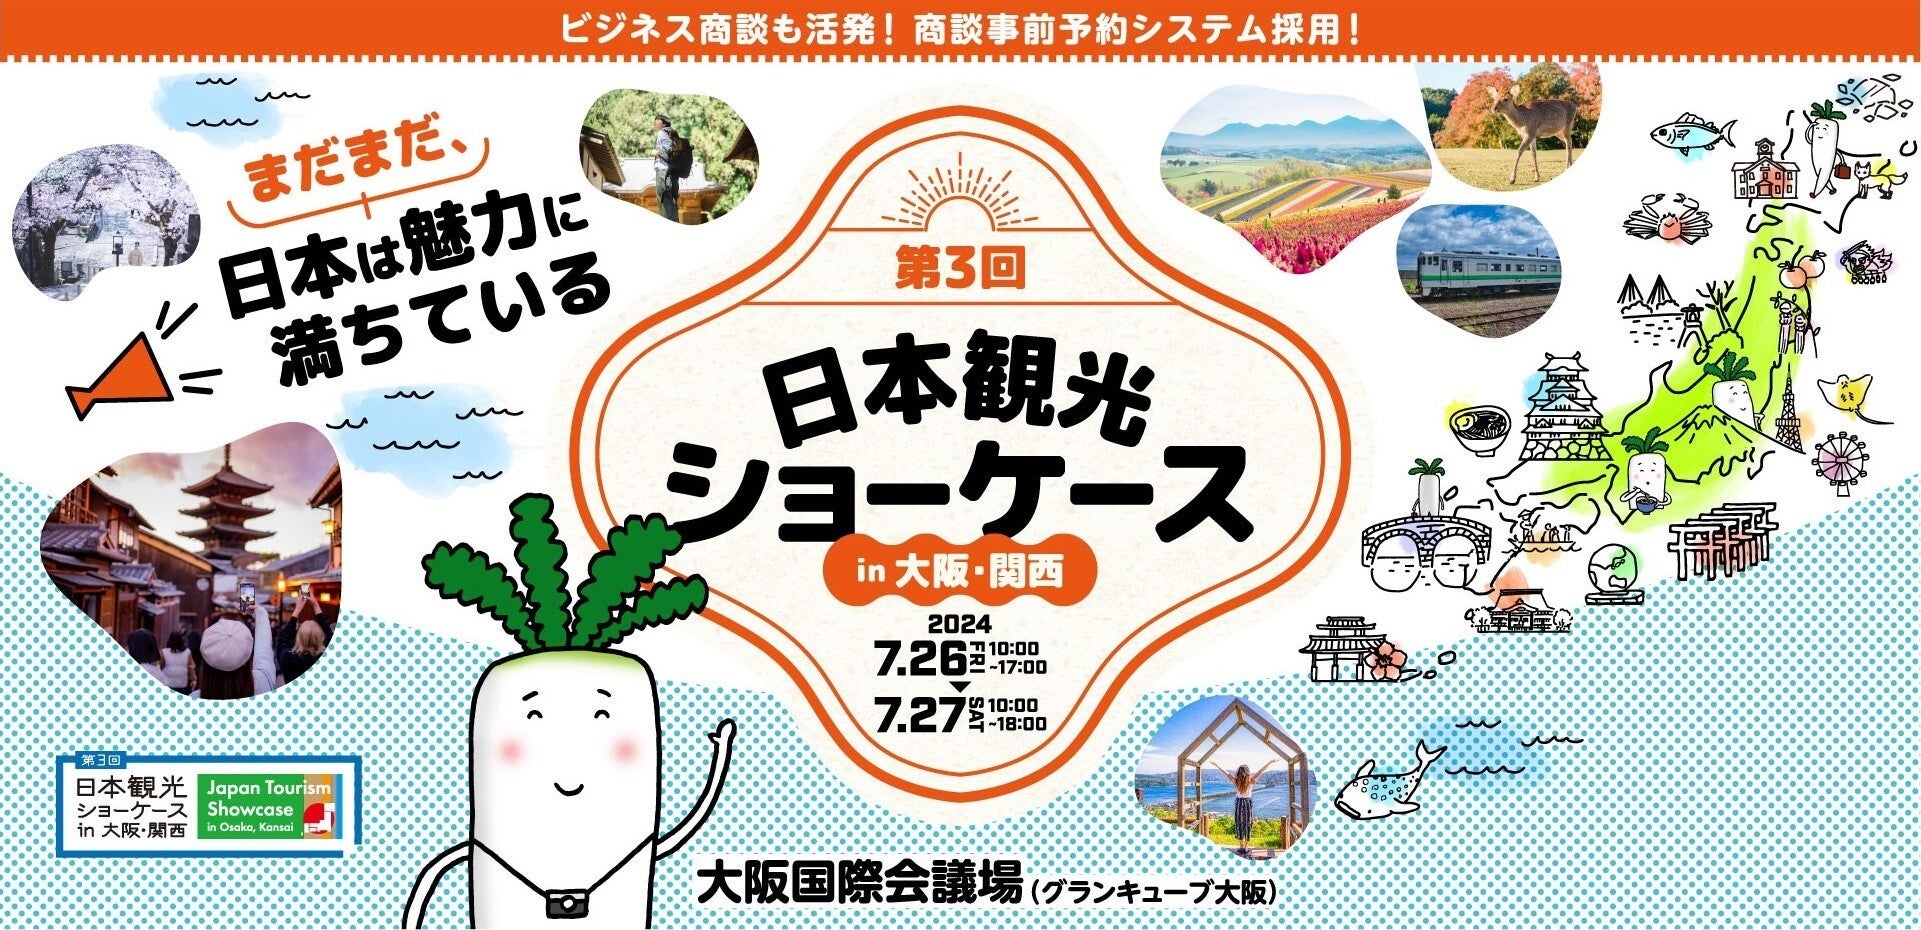 株式会社Pictoriaが、7/26(金)〜27(土)に日本の観光地が集まる“ショーケース”「第3回 日本観光ショーケース in 大阪・関西」に出展いたします